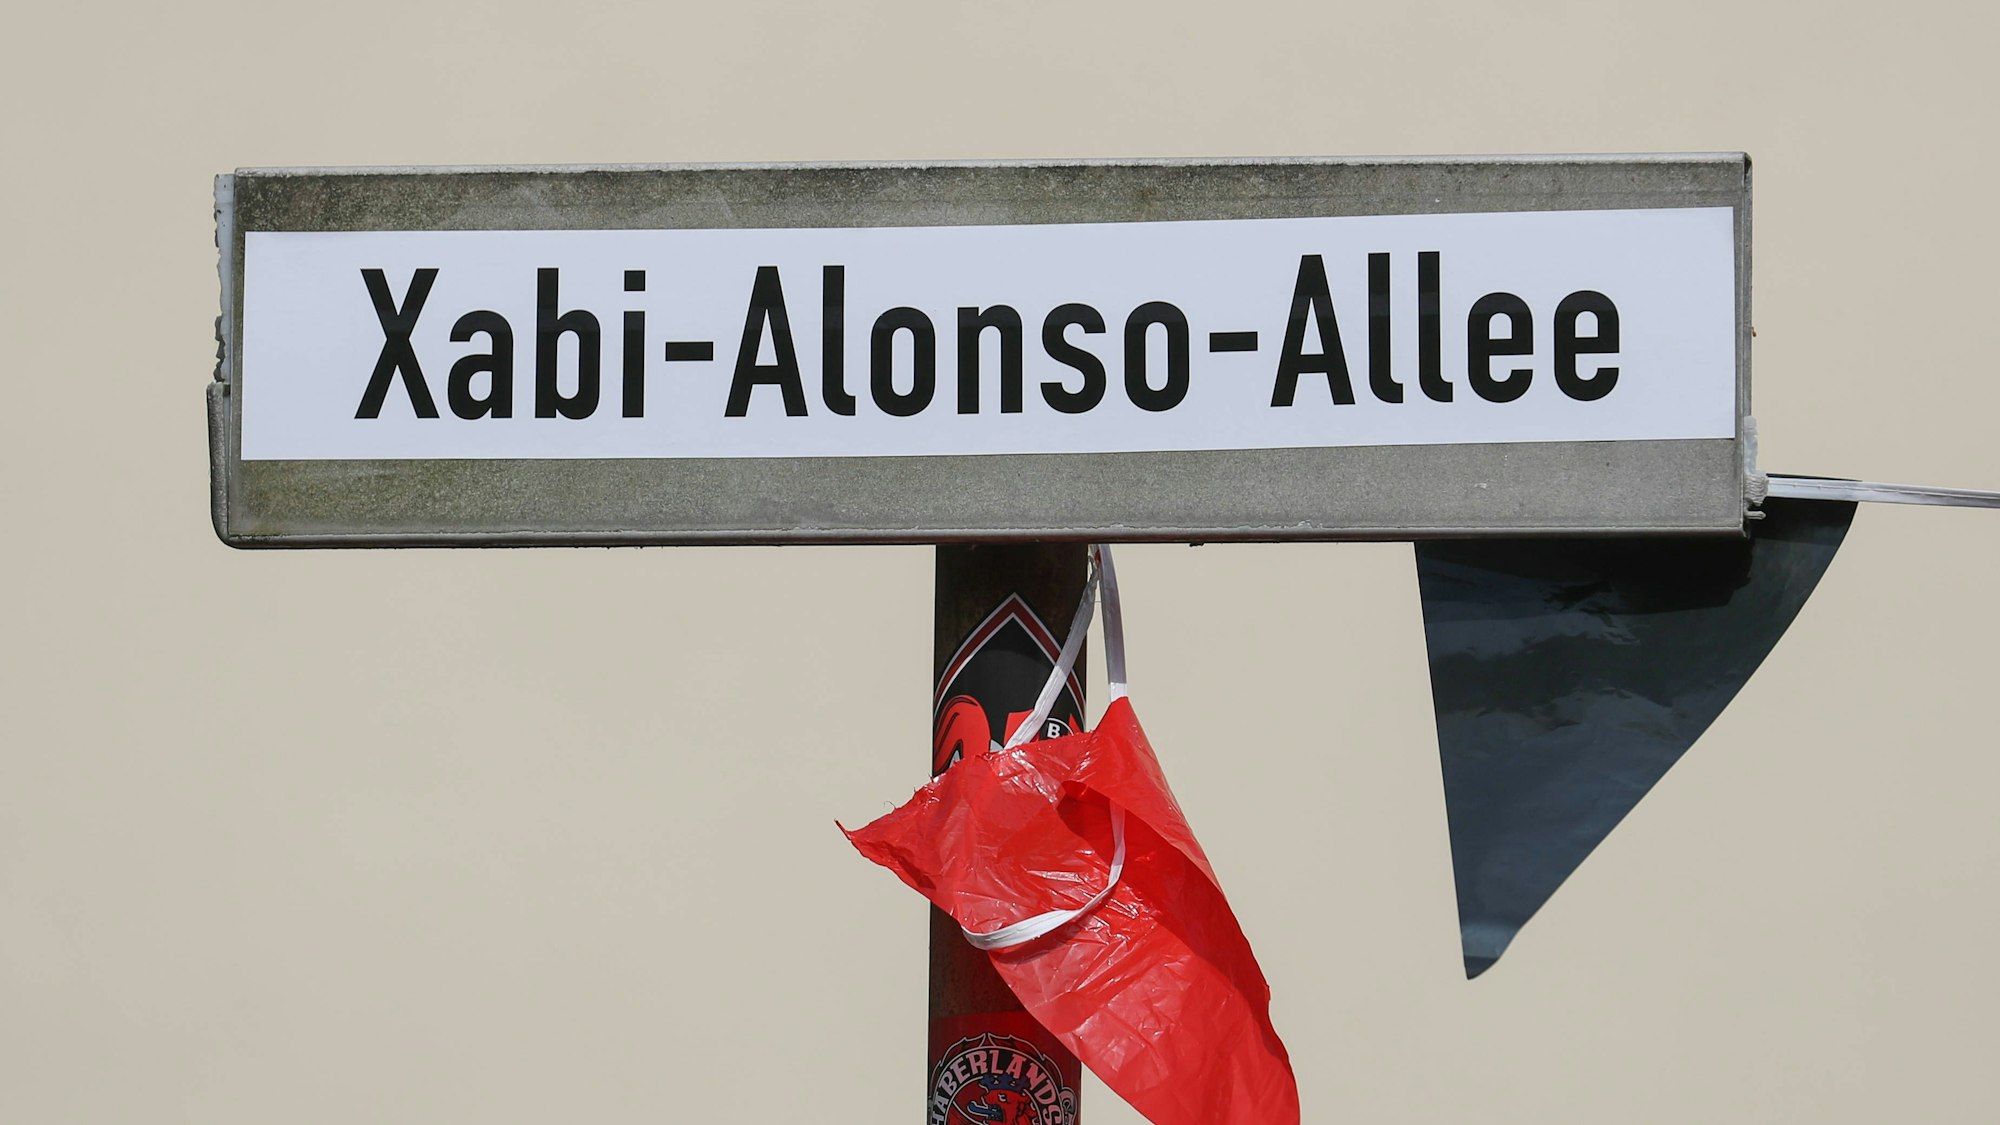 Nicht echt, aber der Stimmung des Tages angemessen: Ein Straßenschild zeigt den Namen Xabi-Alonso-Allee.